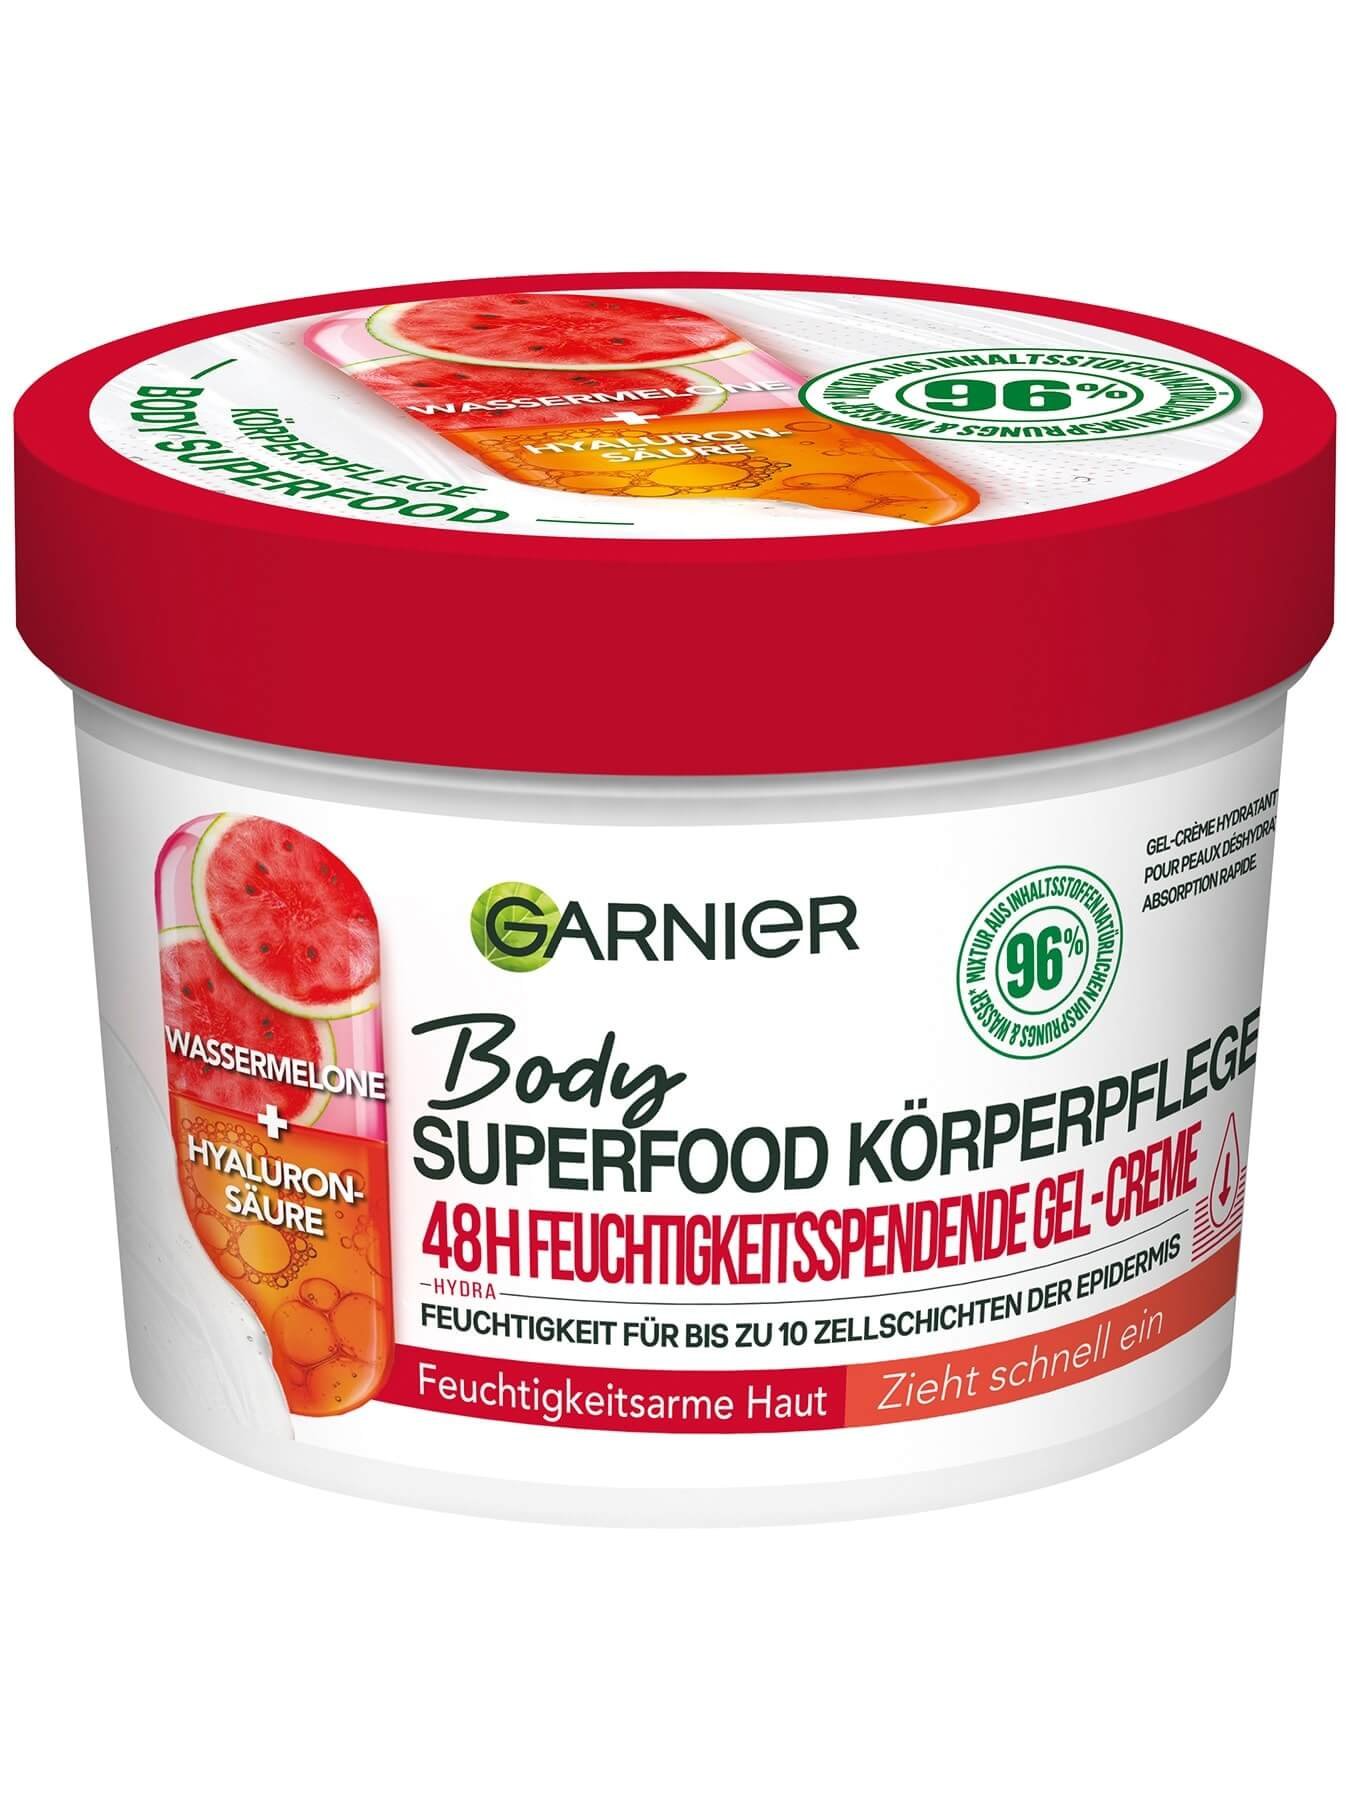 Body Superfood Körperpflege 48h Gel-Creme Wassermelone  - Produktabbildung